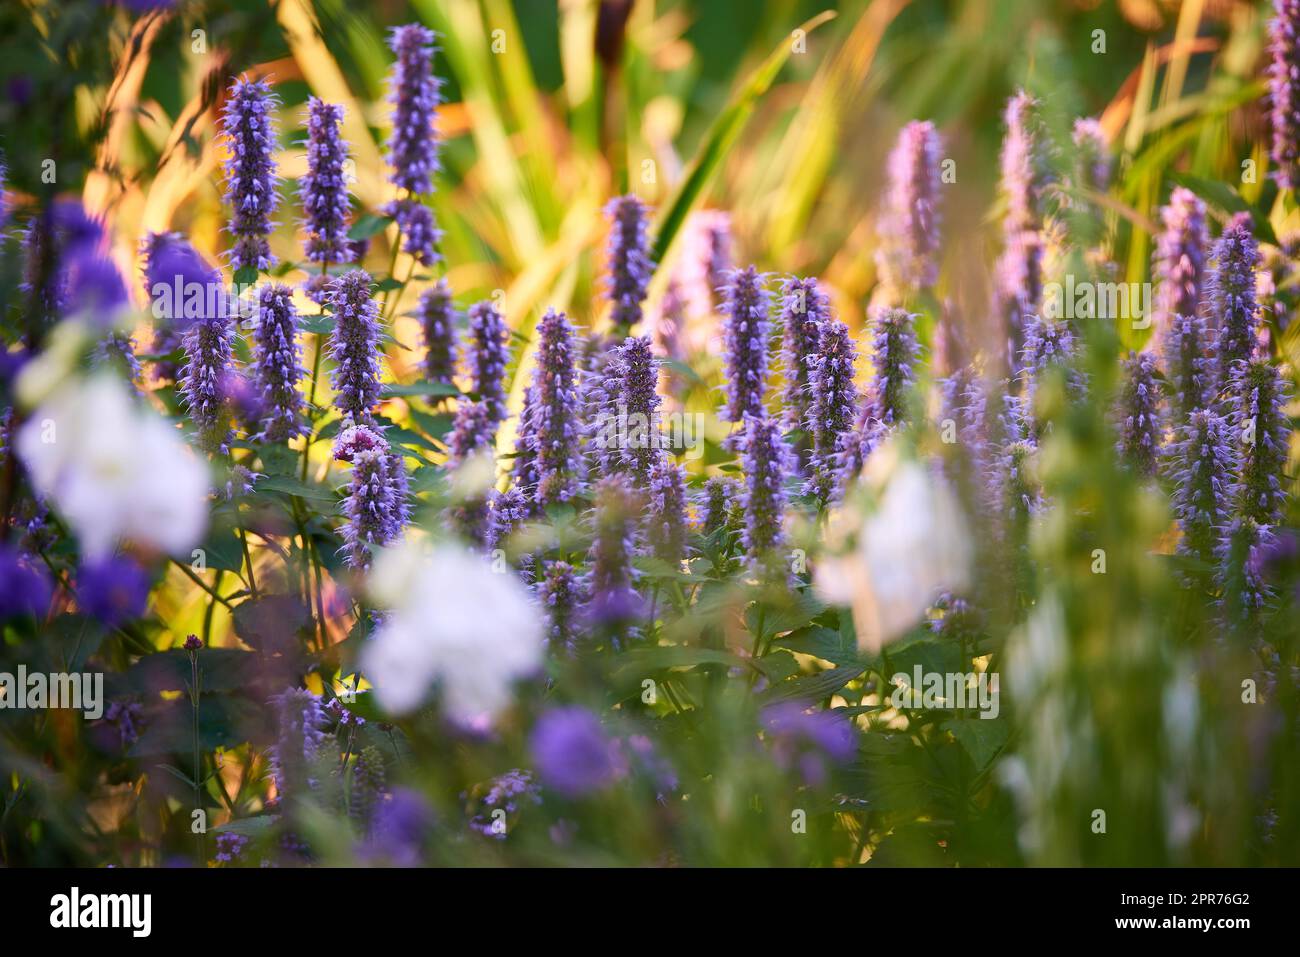 Plantas de hisopo floreciente en un jardín. Campo de lupino con flores blancas y plantas mixtas en un día soleado. Enfoque selectivo en la planta de lupino lavanda. Lupinos de floración de verano y otras flores en un prado. Foto de stock